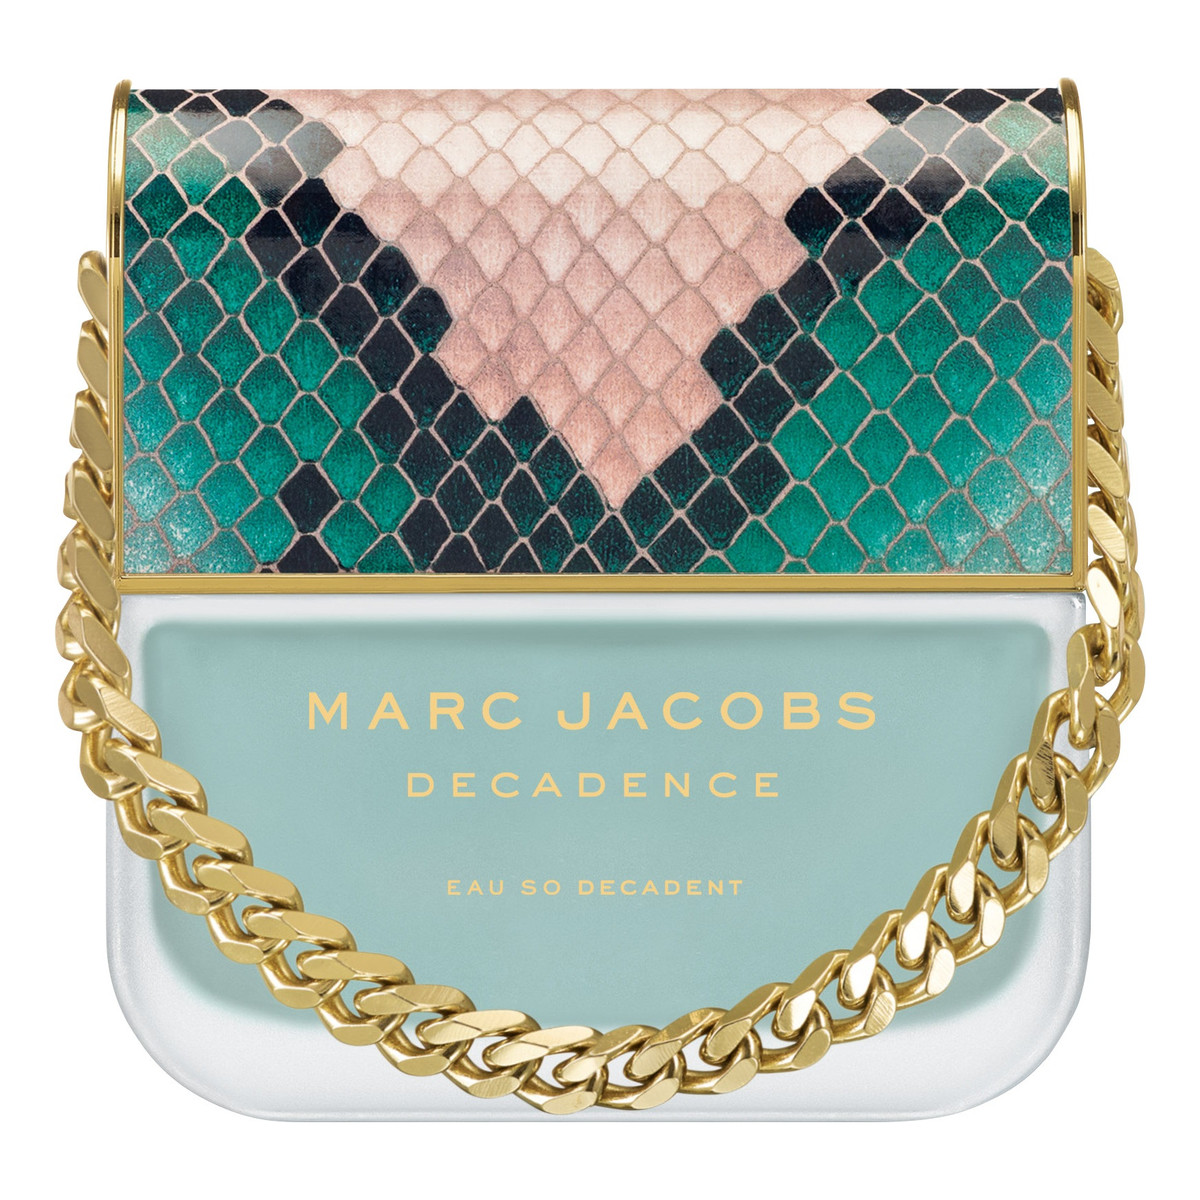 Marc Jacobs Decadence woda toaletowa 50ml